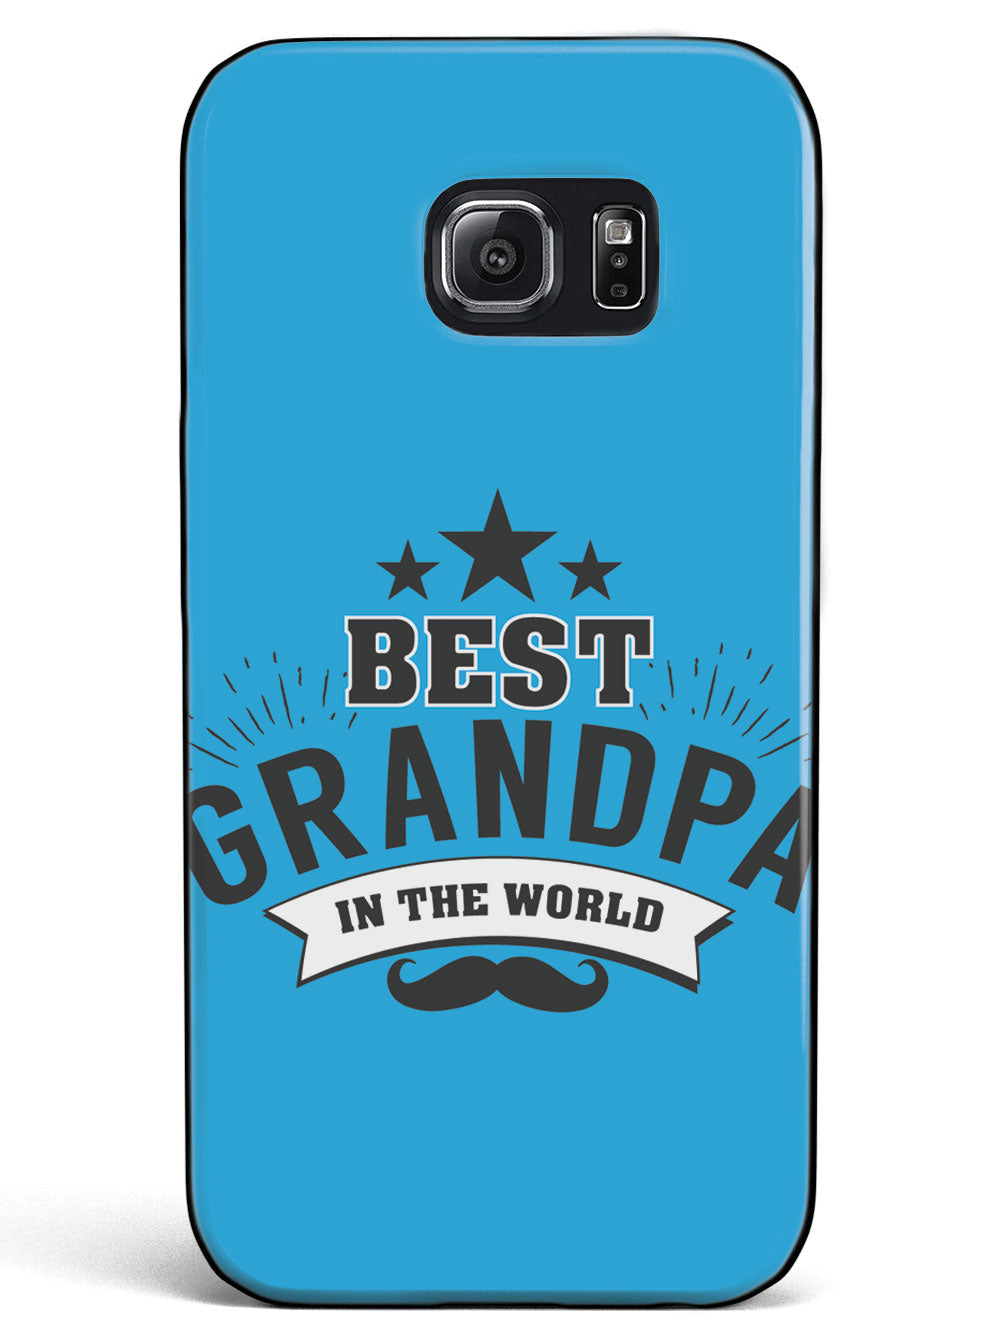 Best Grandpa In The World - Black Case